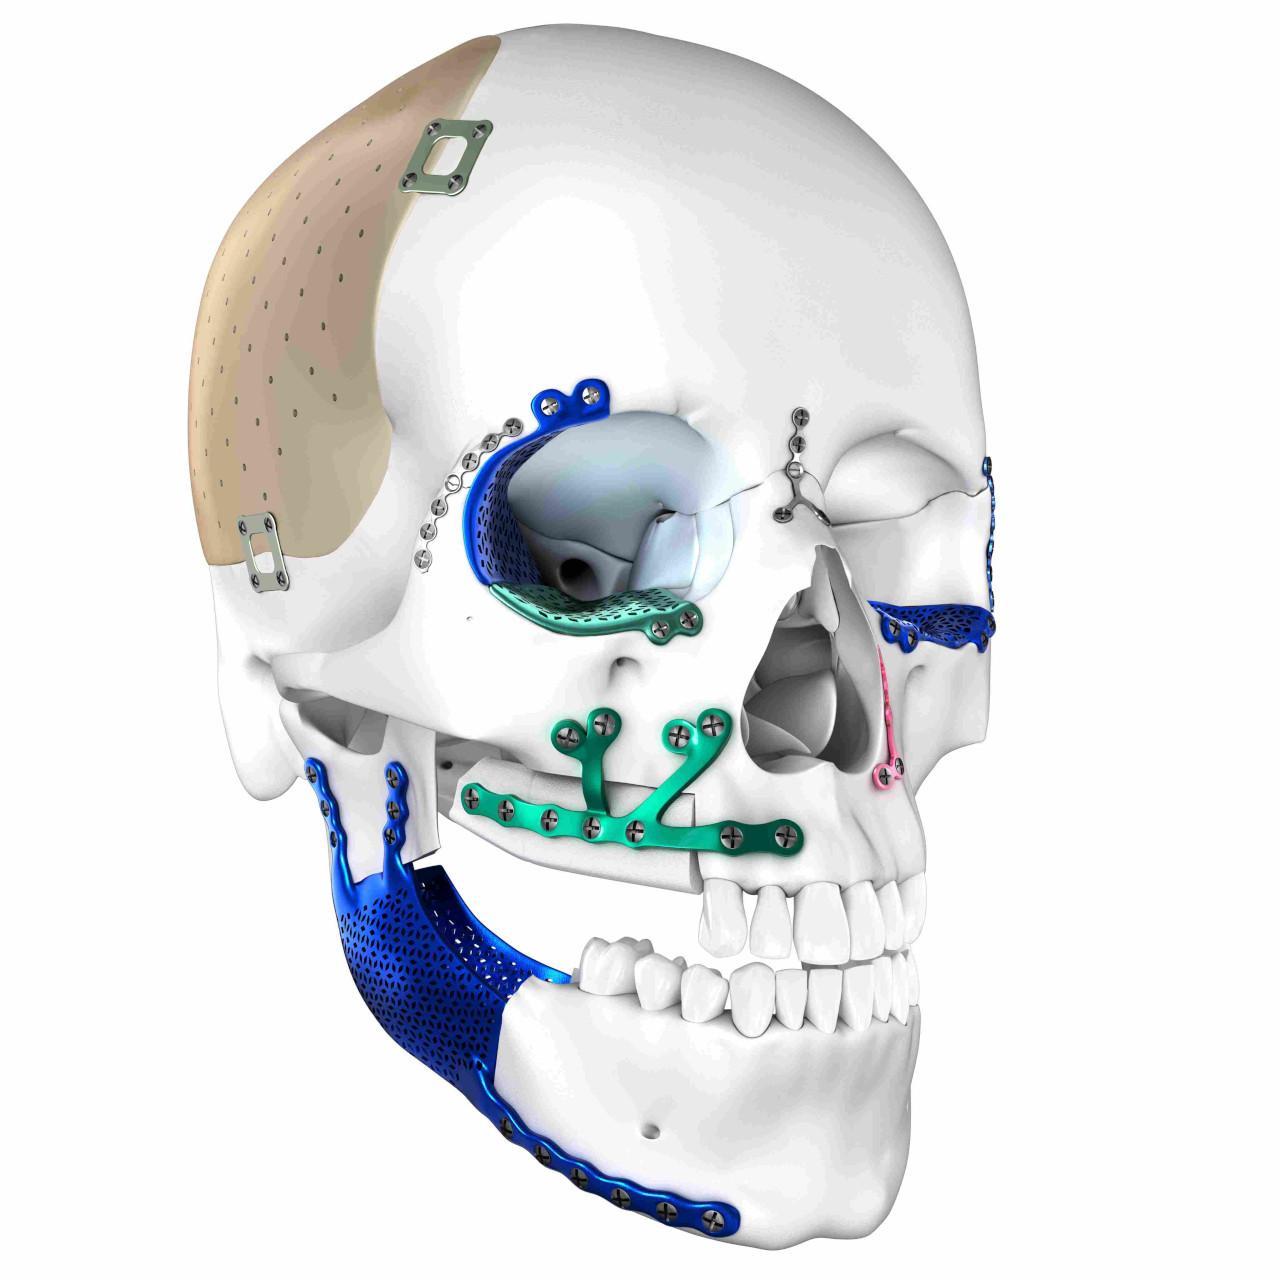 Skull_Deformity_Implants_Market